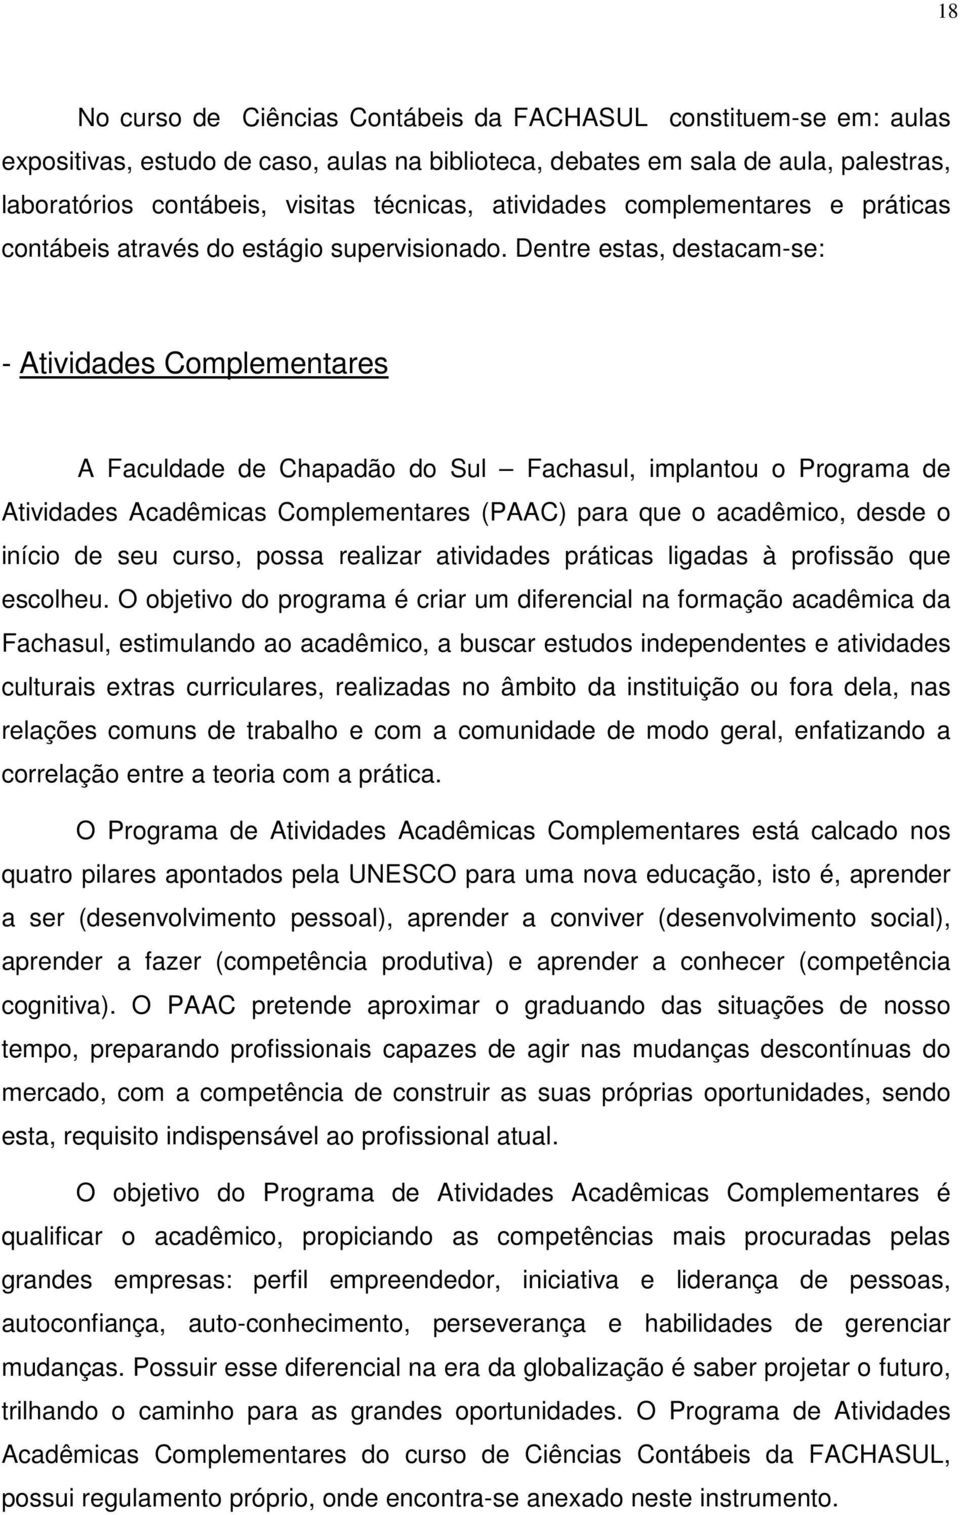 Dentre estas, destacam-se: - Atividades Complementares A Faculdade de Chapadão do Sul Fachasul, implantou o Programa de Atividades Acadêmicas Complementares (PAAC) para que o acadêmico, desde o